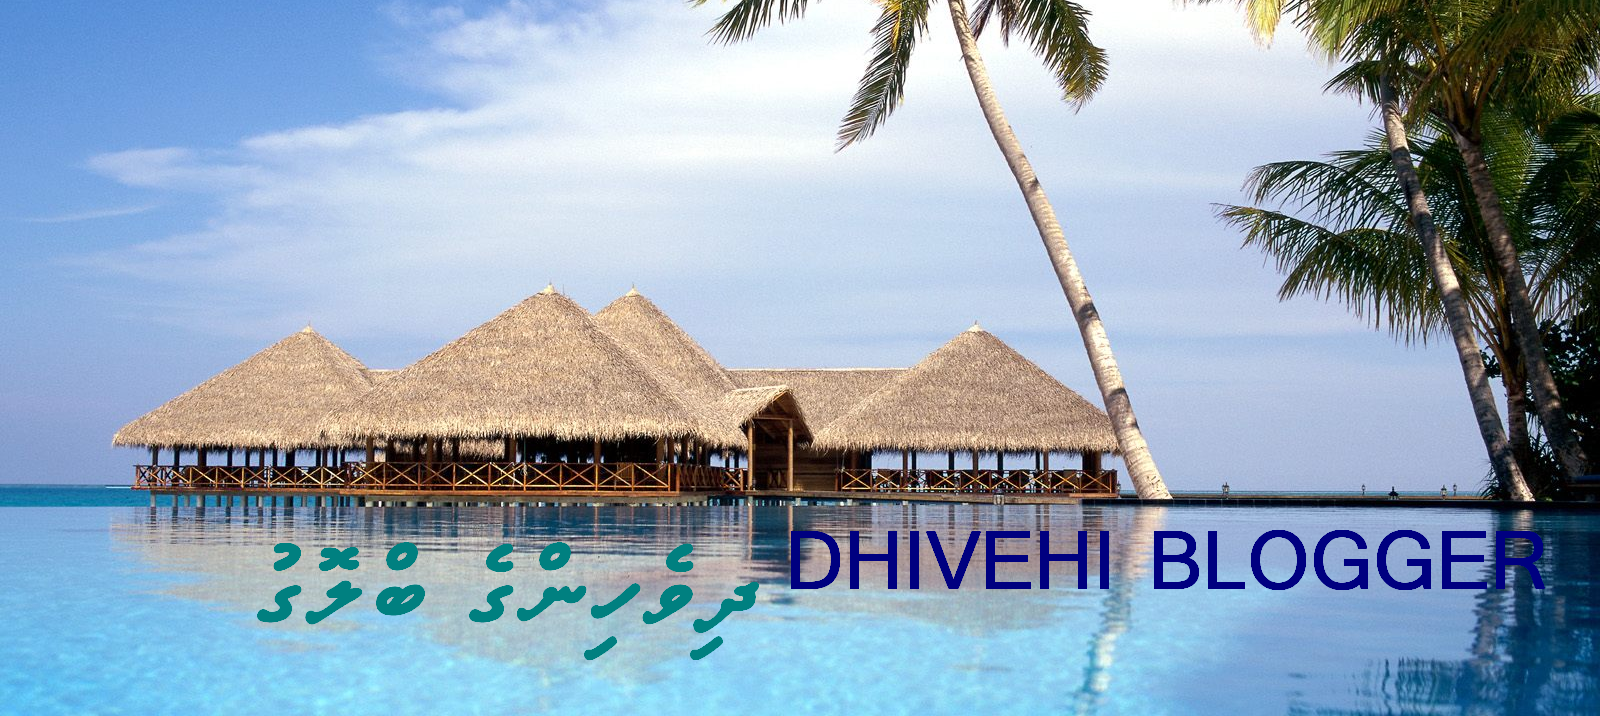 Dhivehi blogger  އަމިއްލައަށް ބޮލޮގެއްހައްދަވާ